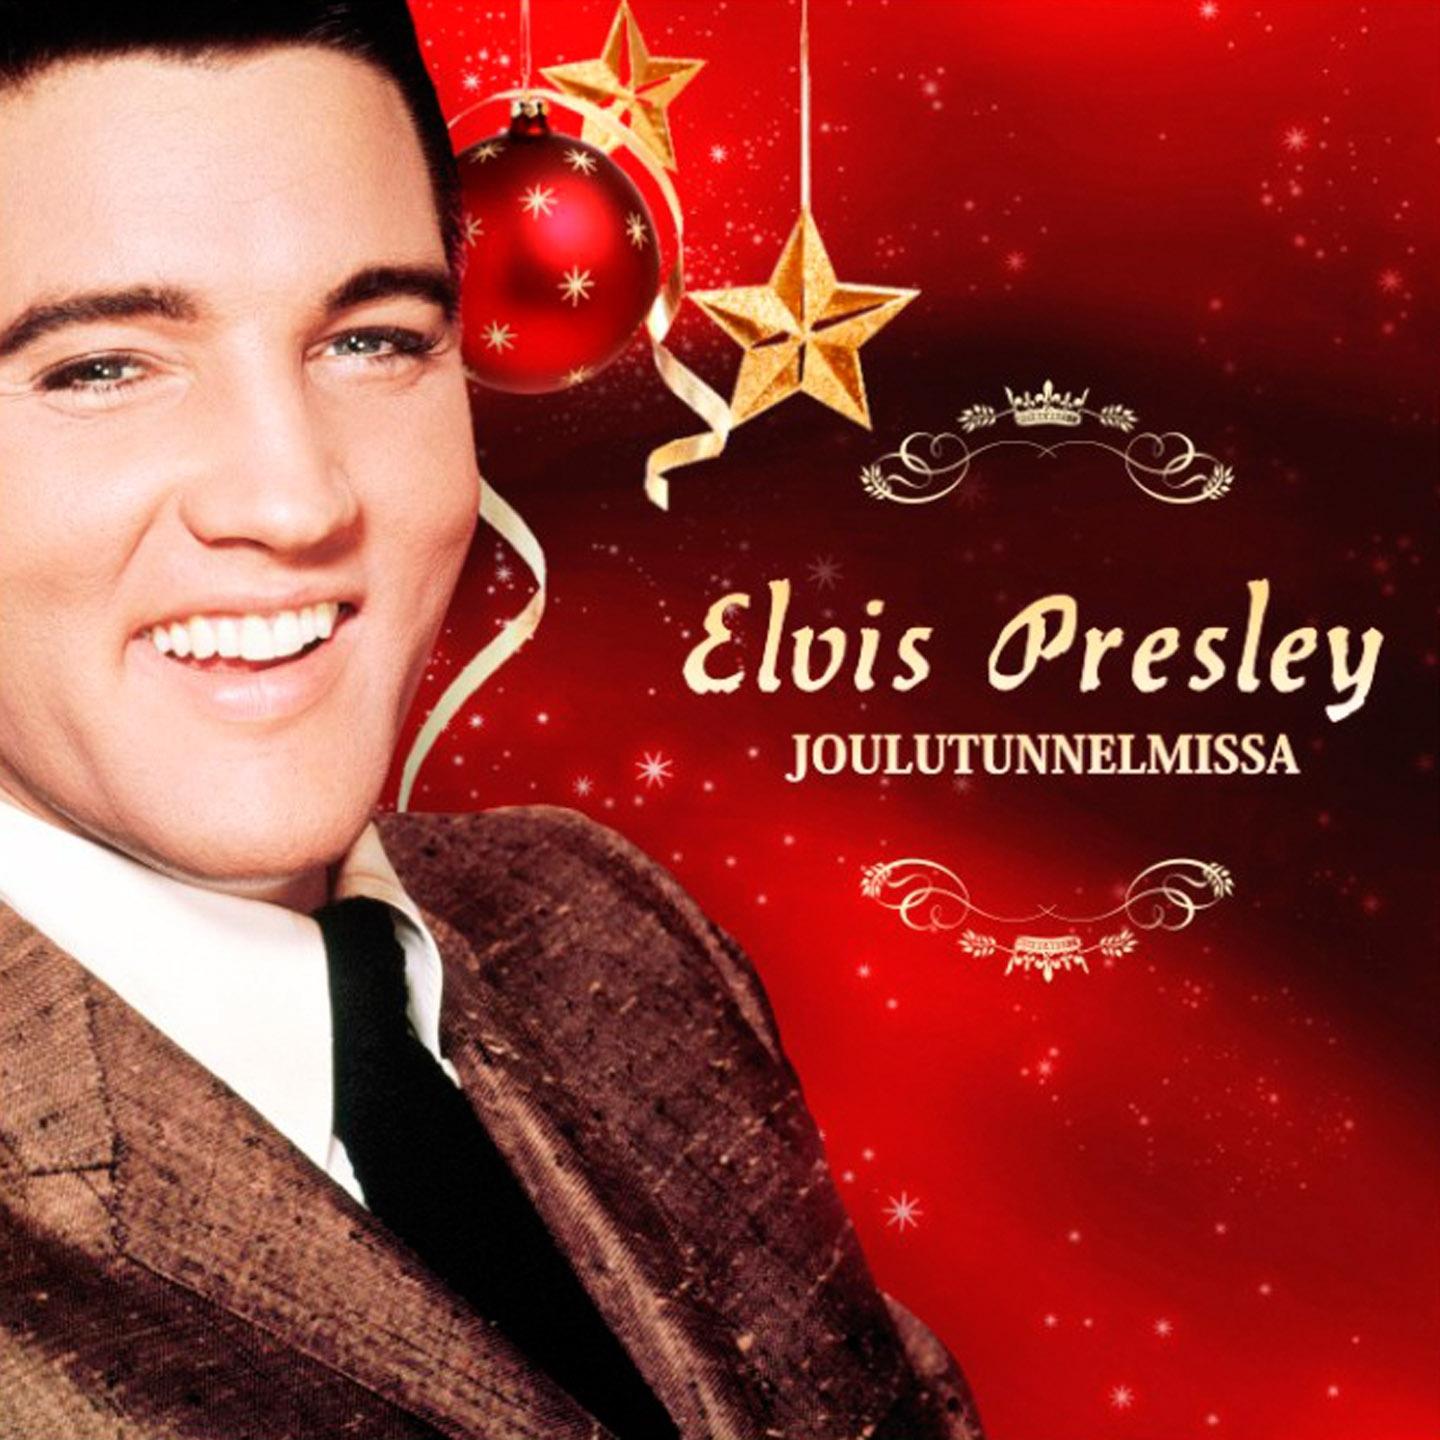 Elvis Presley Joulutunnelmissa专辑